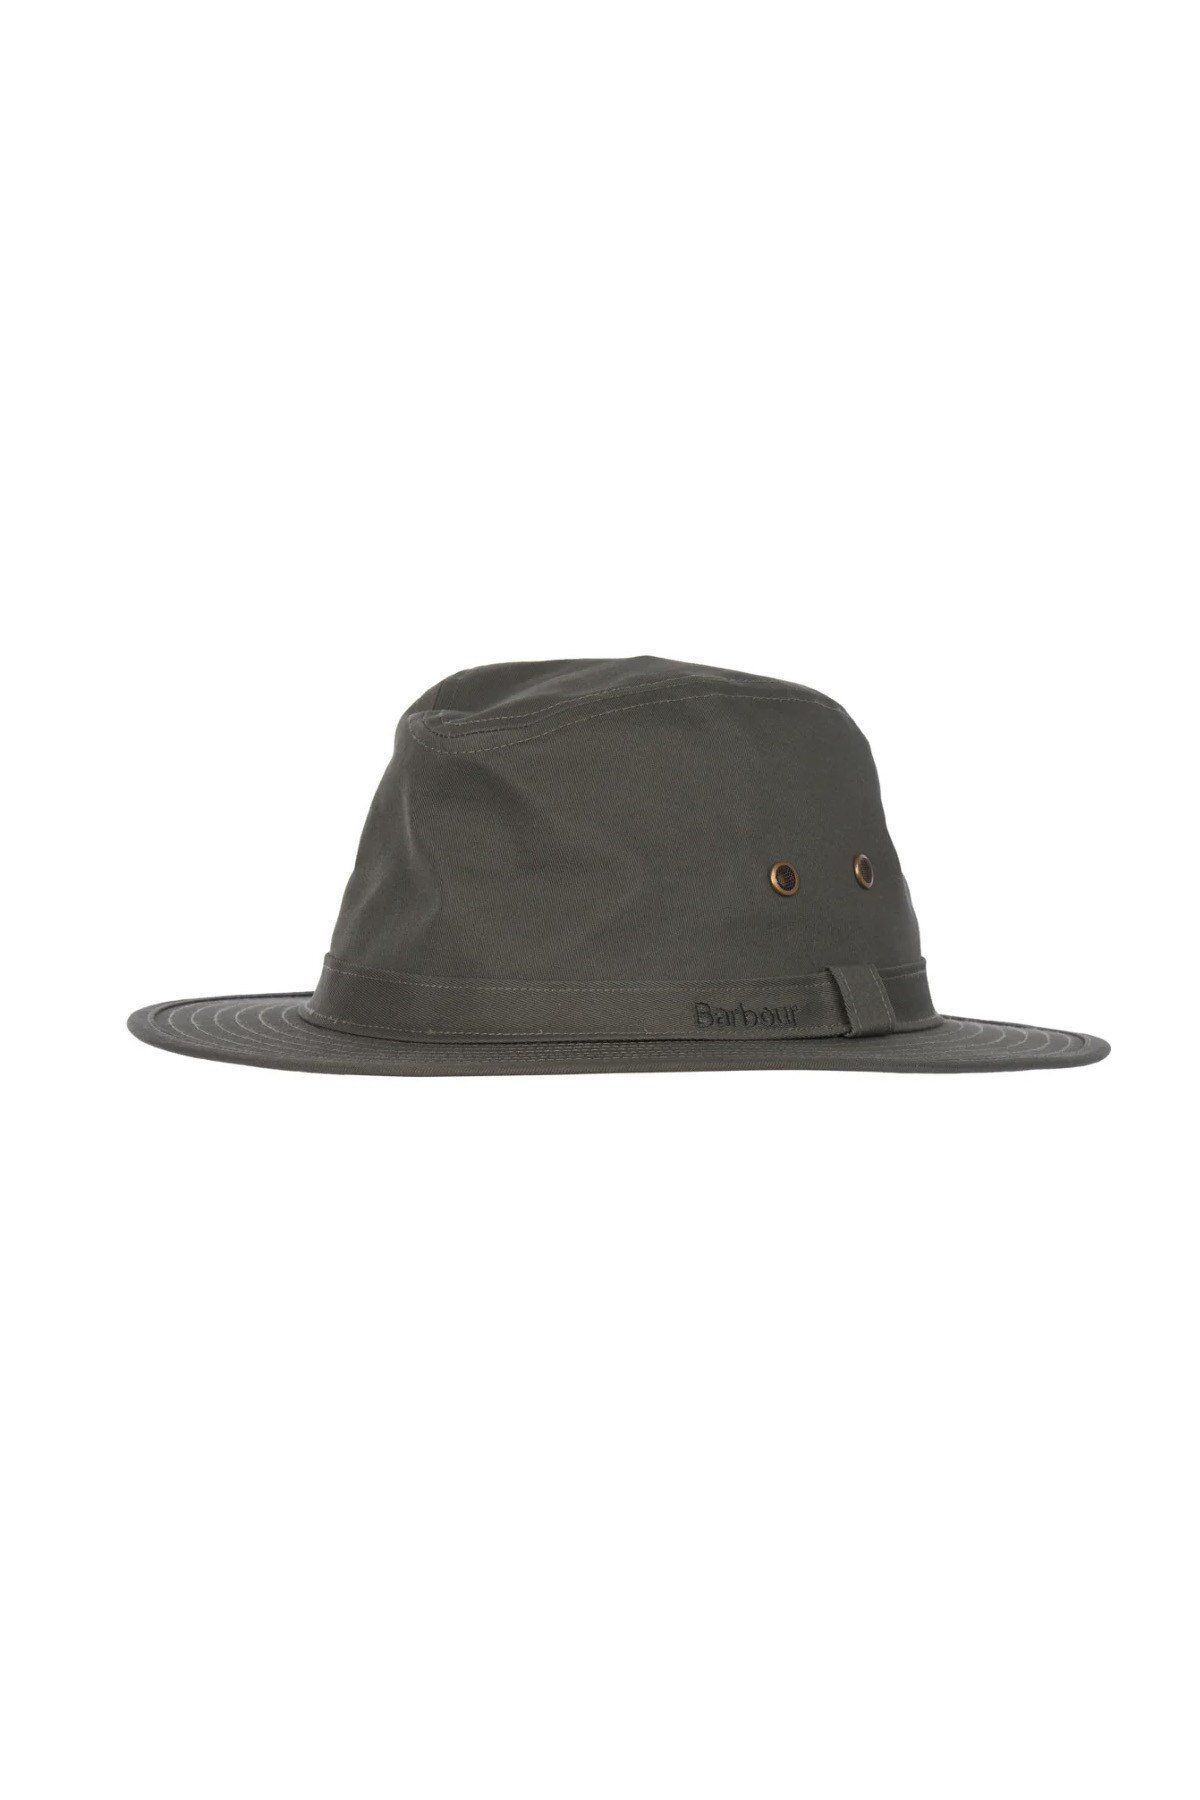 Barbour Dawson Safari Hat OL51 زیتون